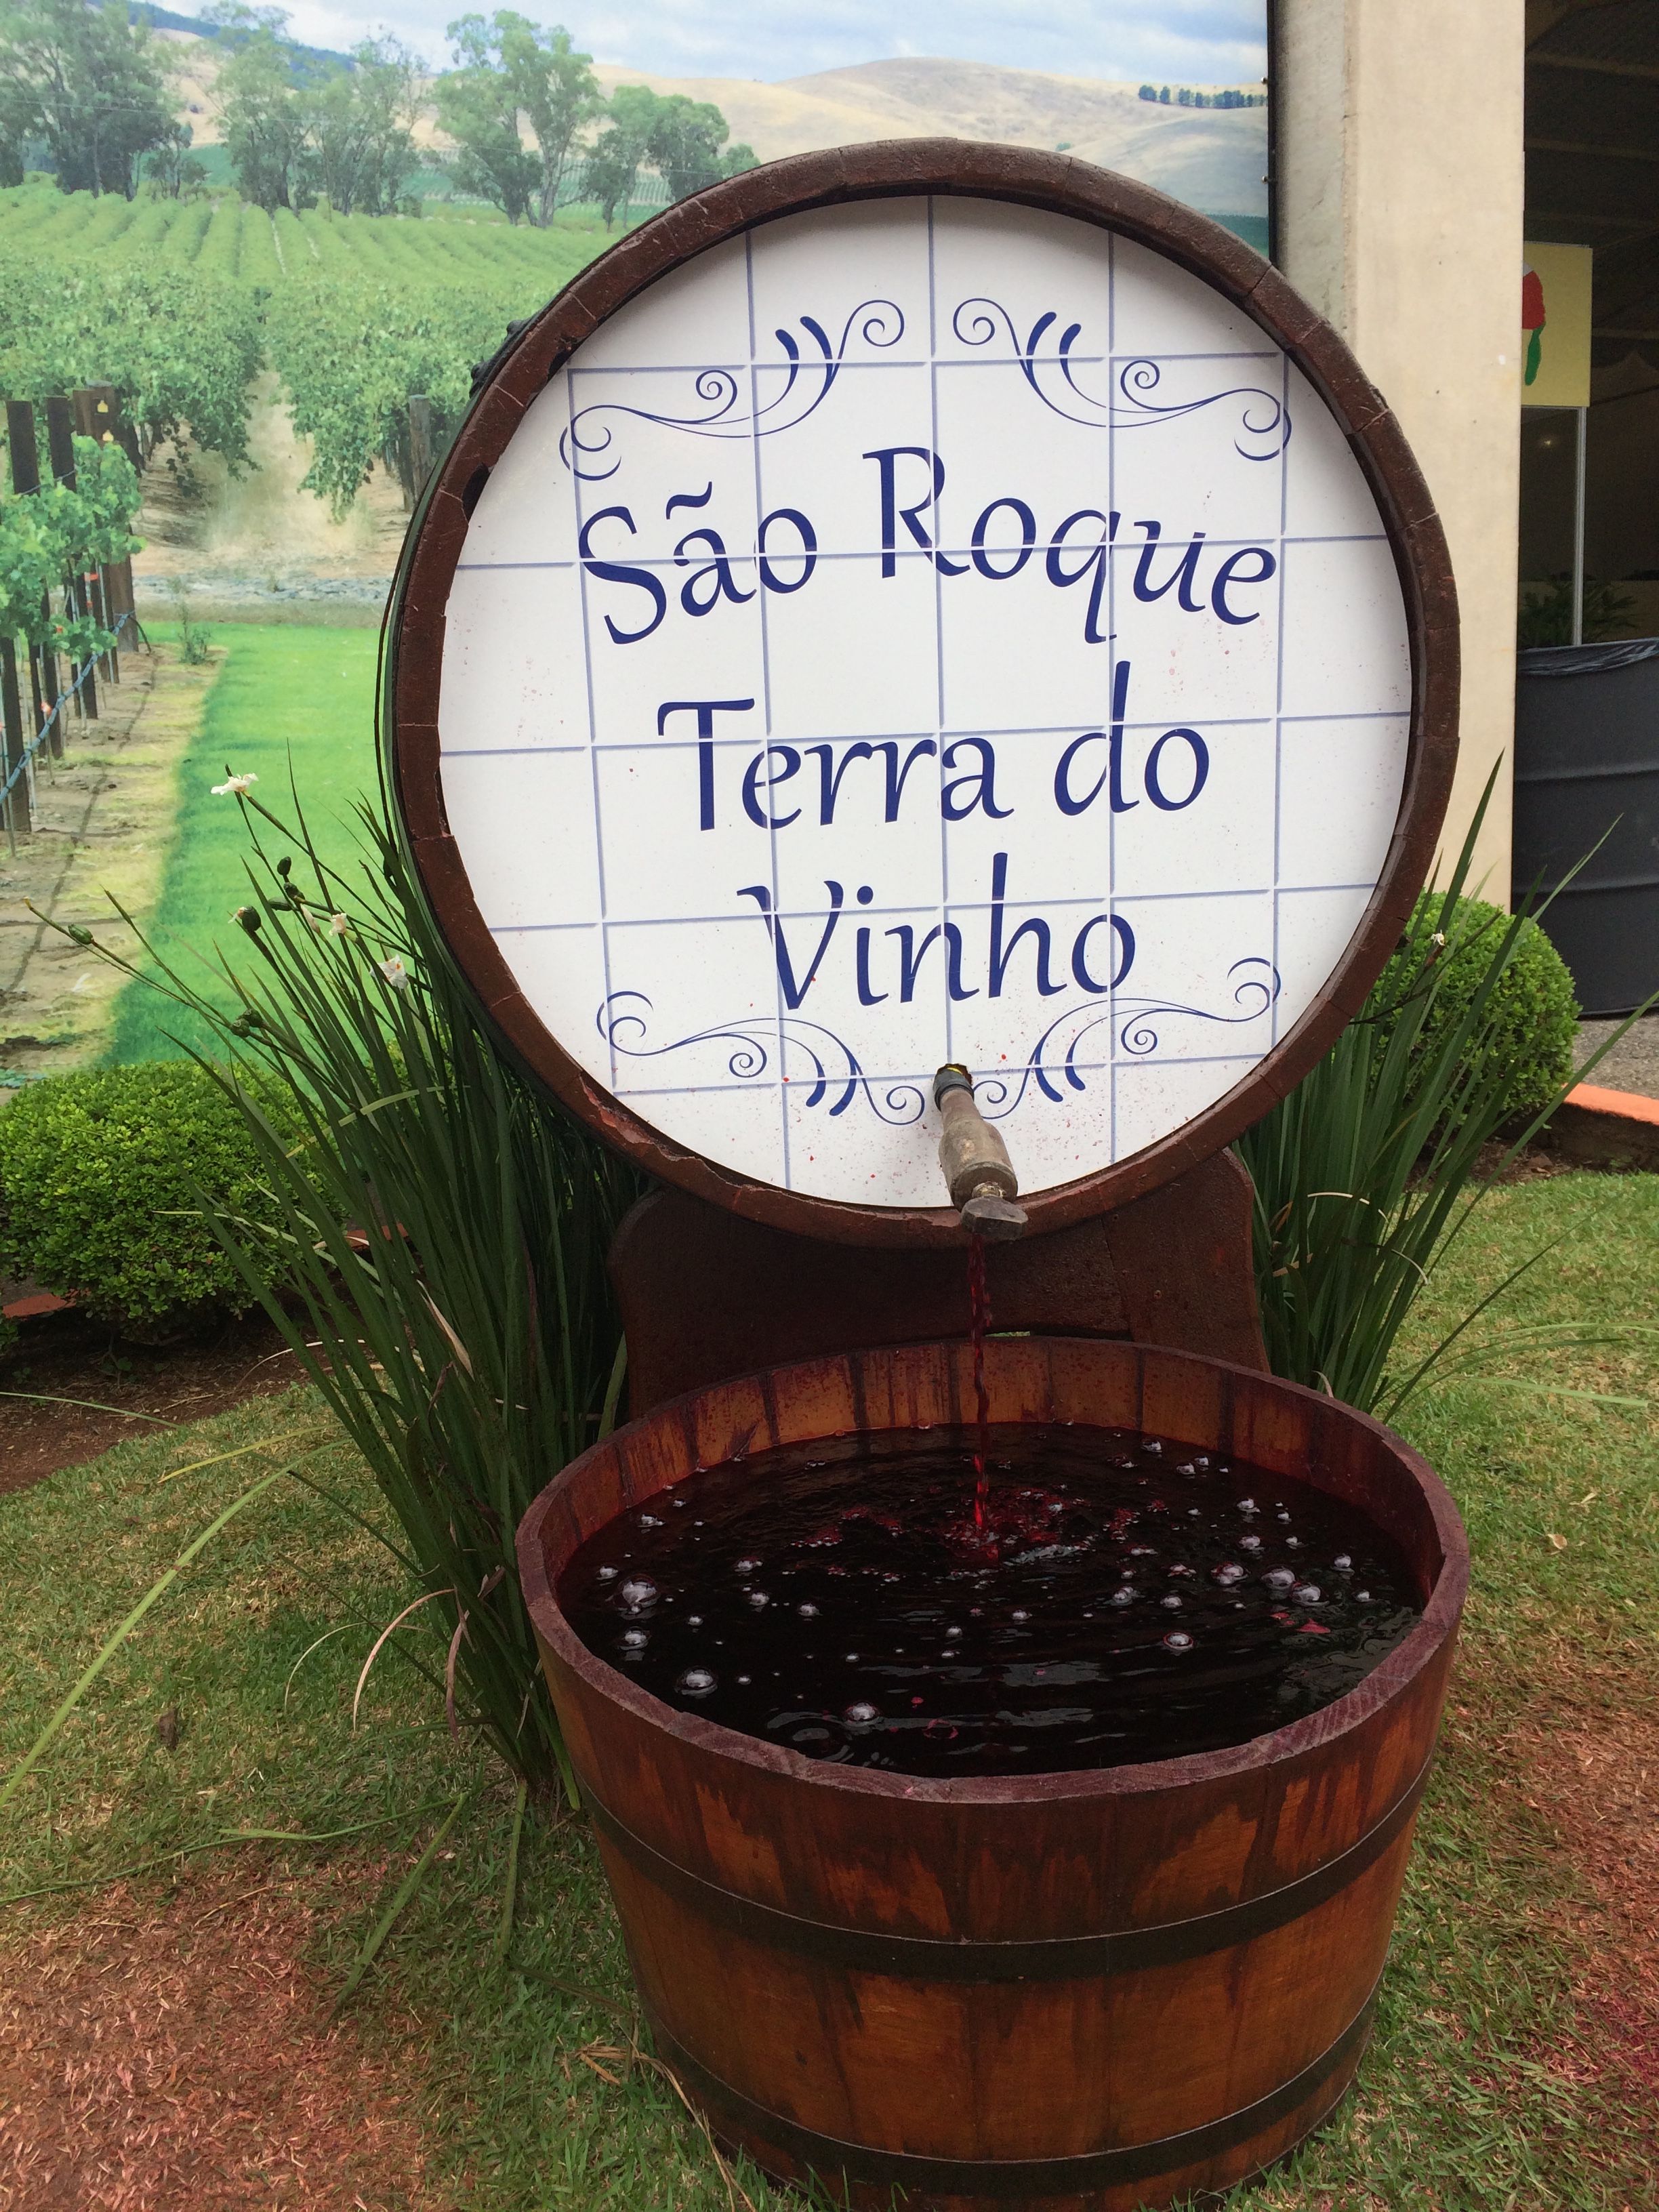 SÃO ROQUE- ROTA DO VINHO (DAY USE) - DOMINGO E FERIADO